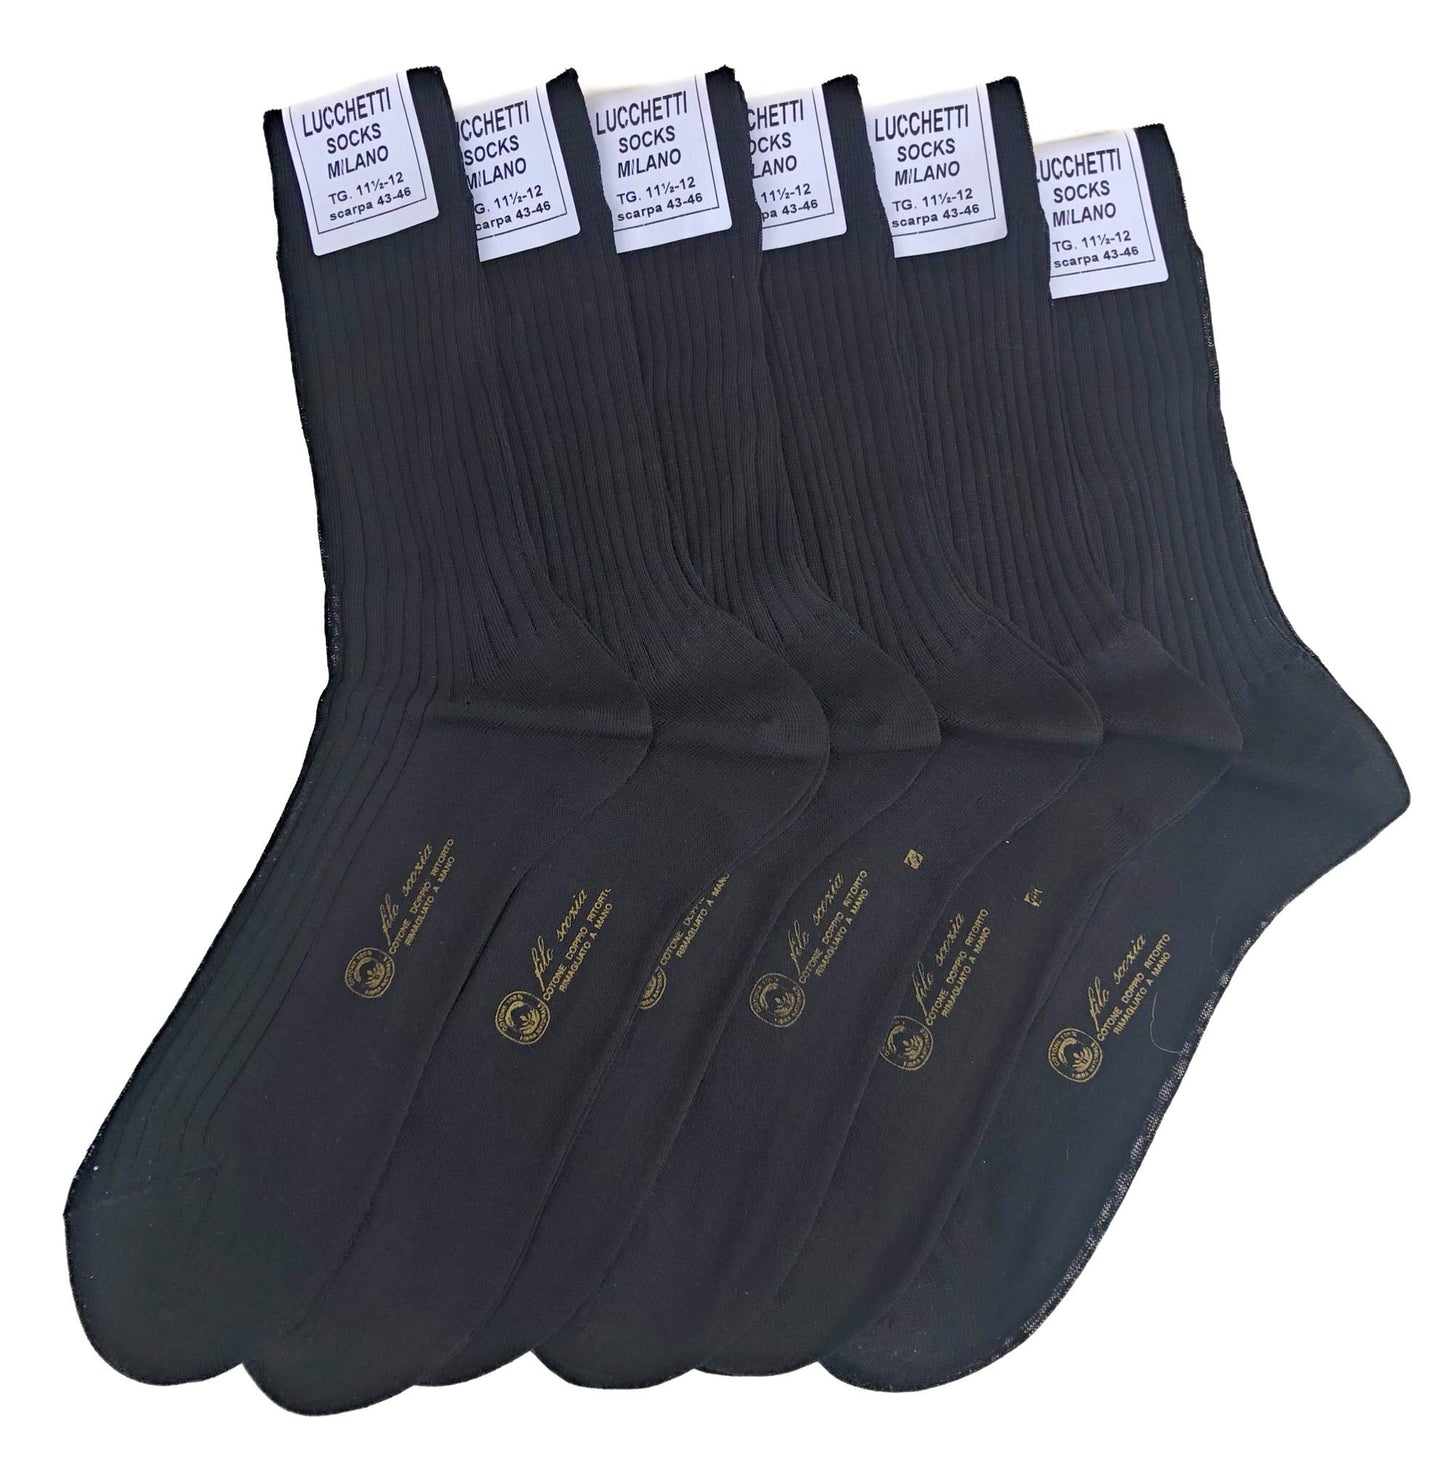 Lucchetti Socks Milano 6 PAIA calze da uomo CORTE filo di scozia 100% cotone rimagliate Made in Italy